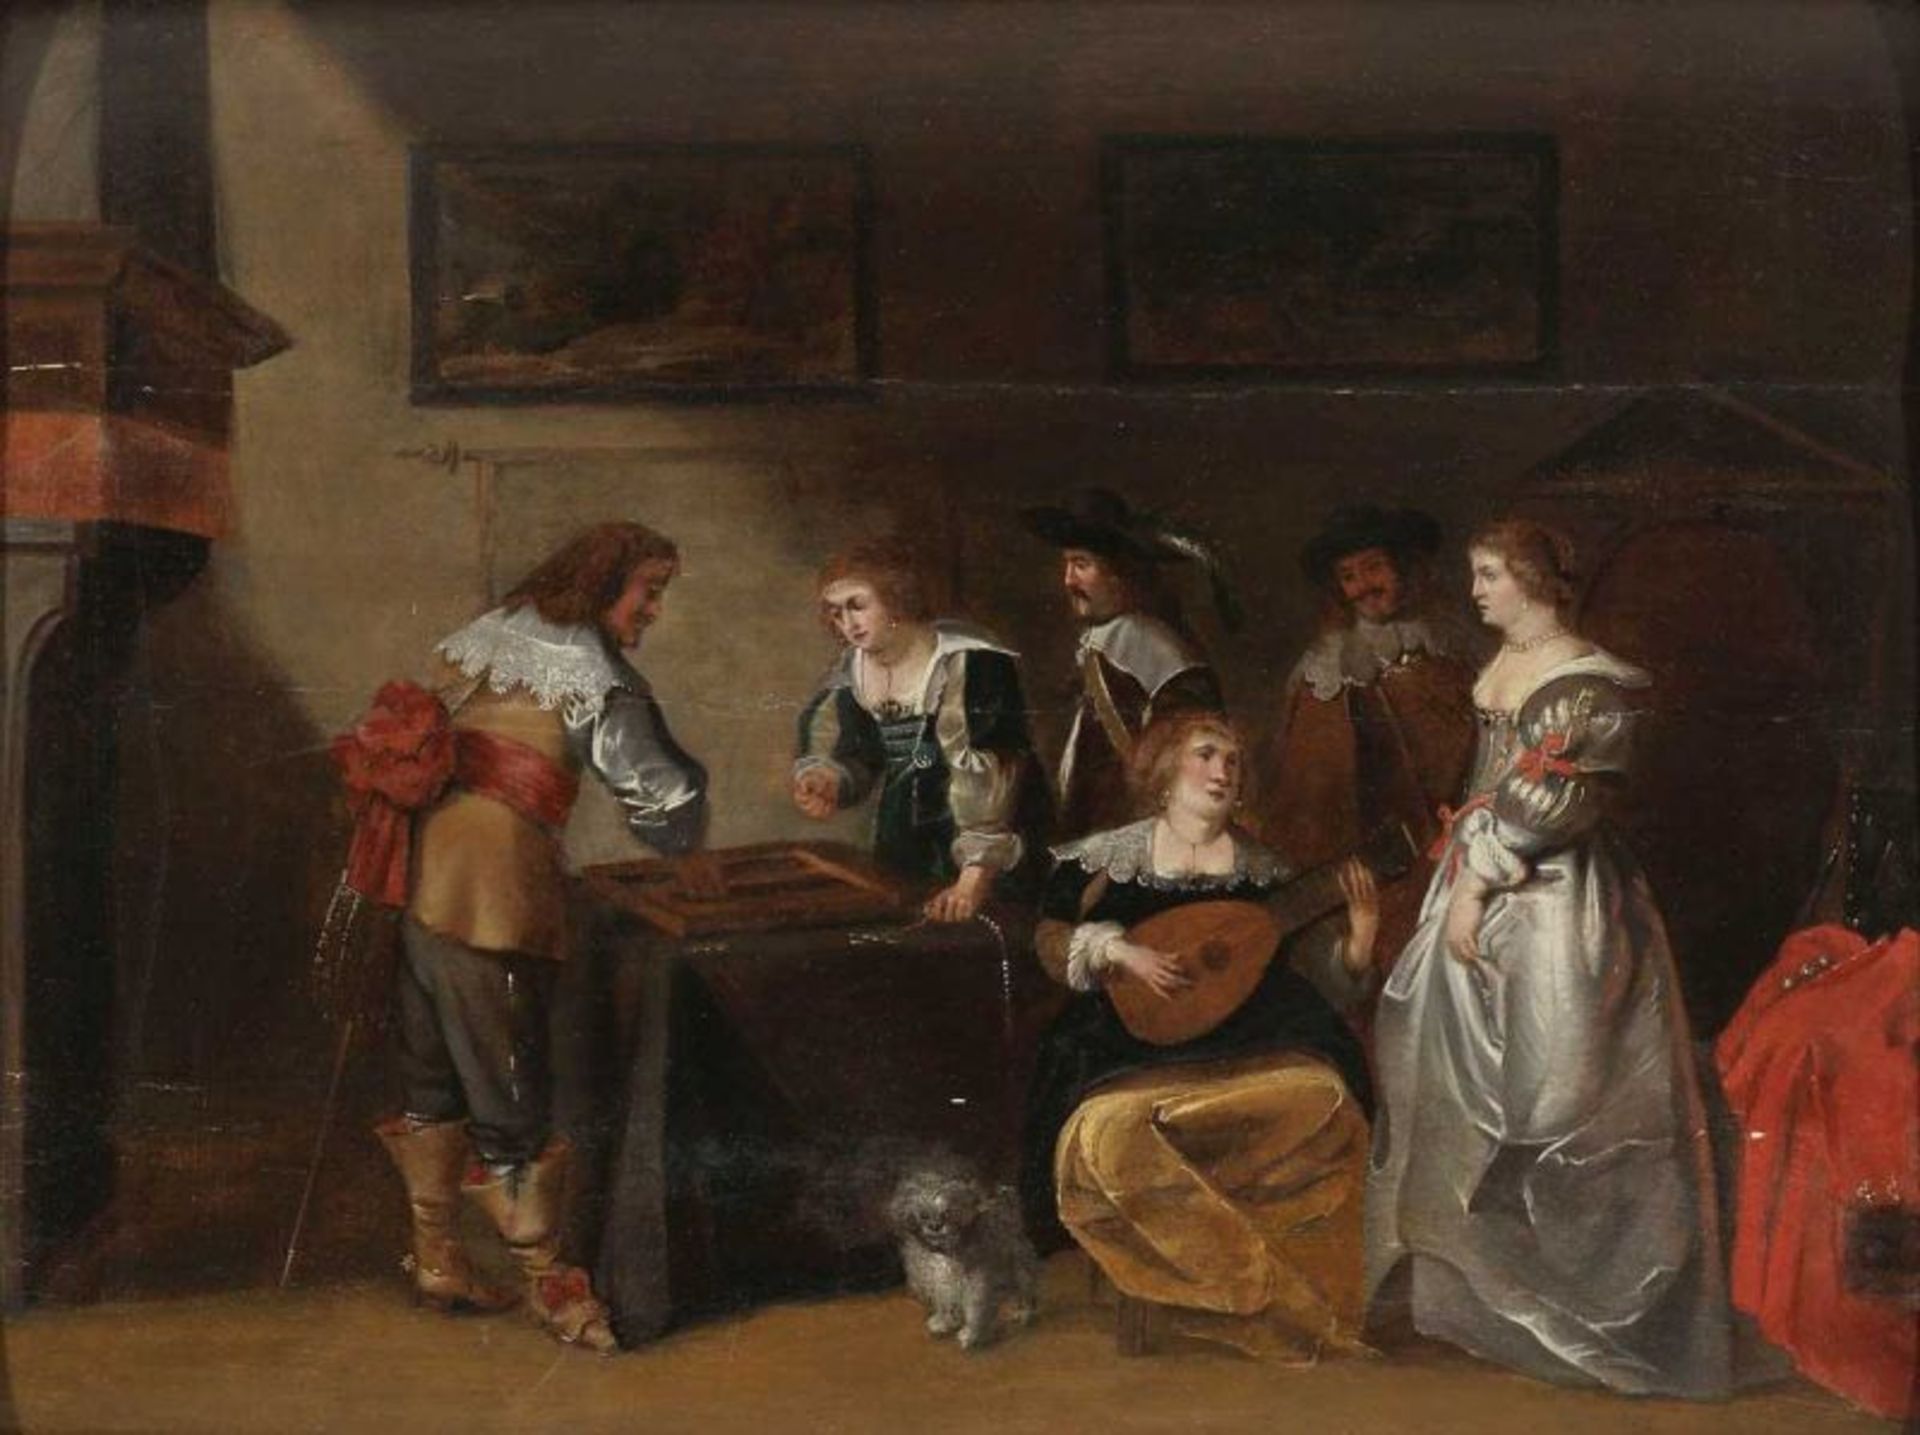 Christoffel Jacobsz. van der Laemen 1606/1615 Brüssel - 1651 Antwerpen Attr. - Eine spielende